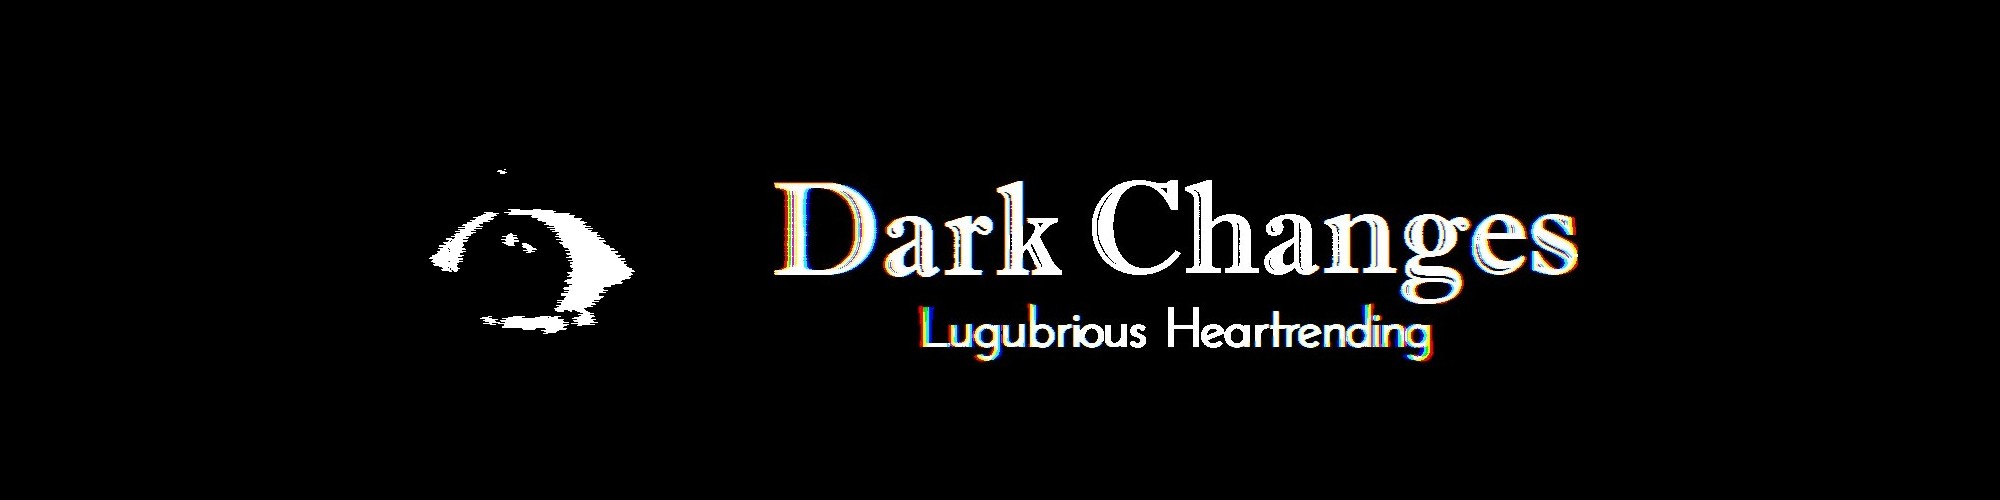 Dark Changes: Lugubrious Heartrending